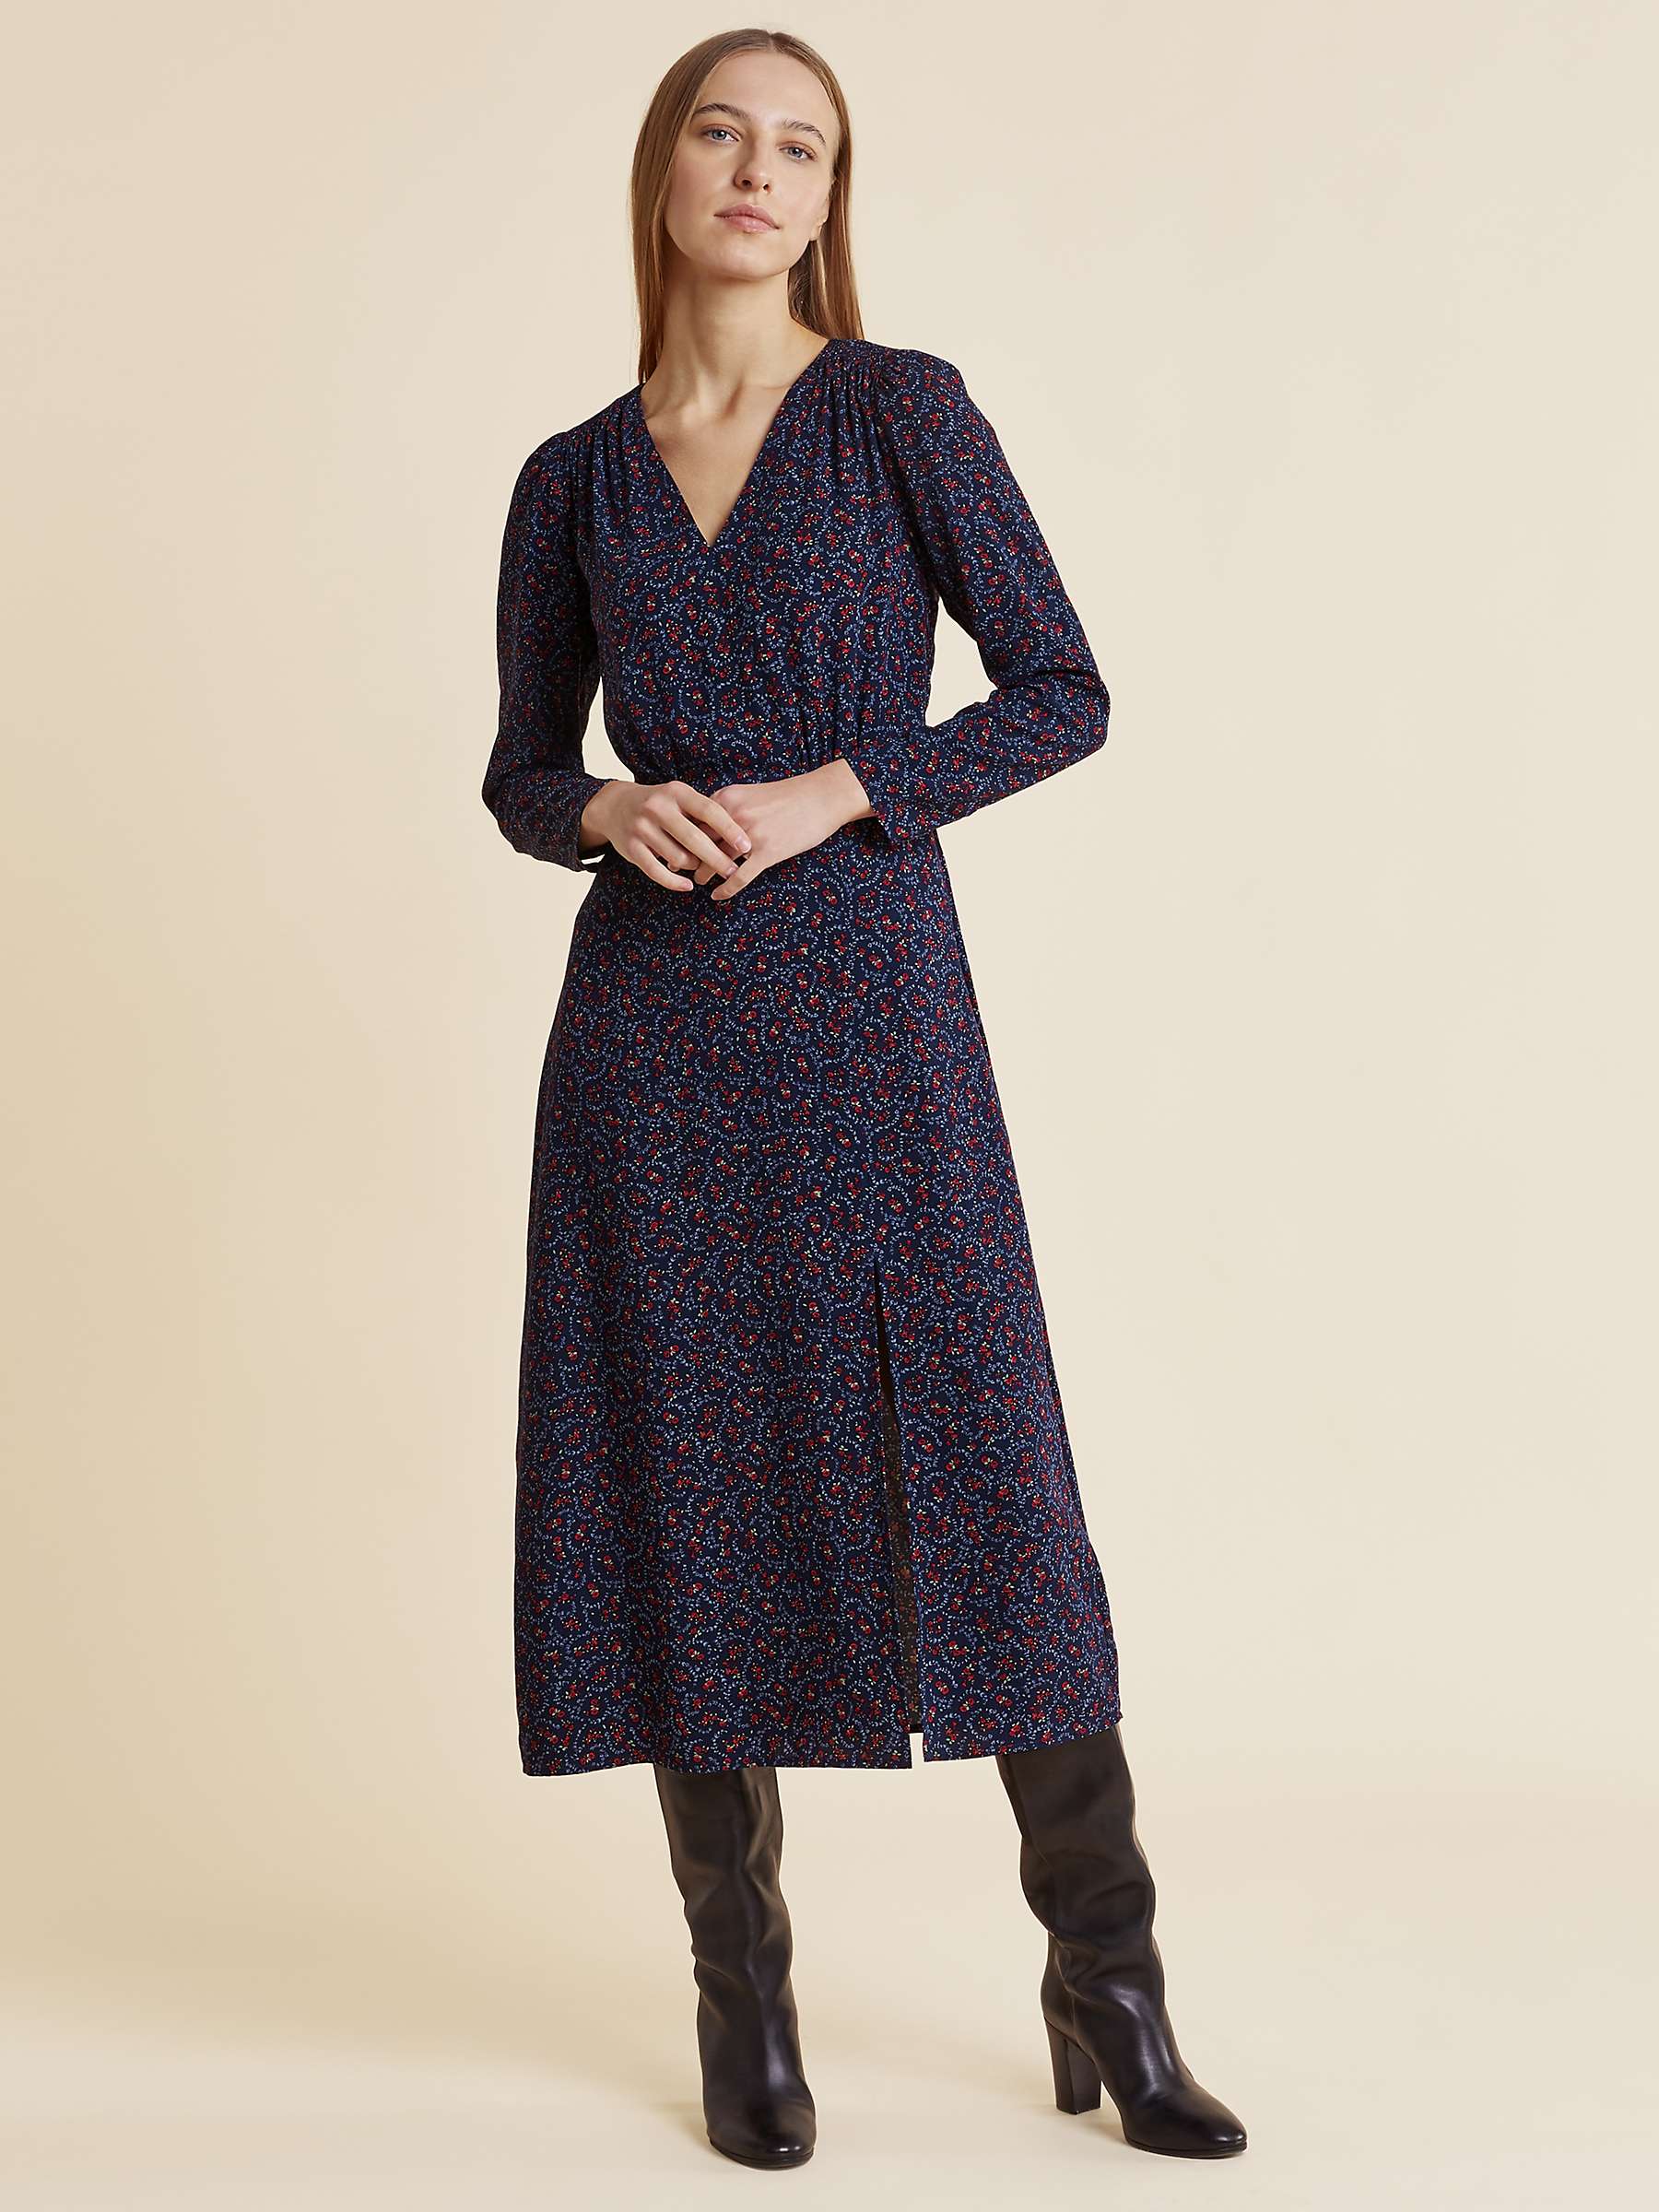 Buy Albaray Vintage Rose Shirred Shoulder Dress, Navy/Multi Online at johnlewis.com